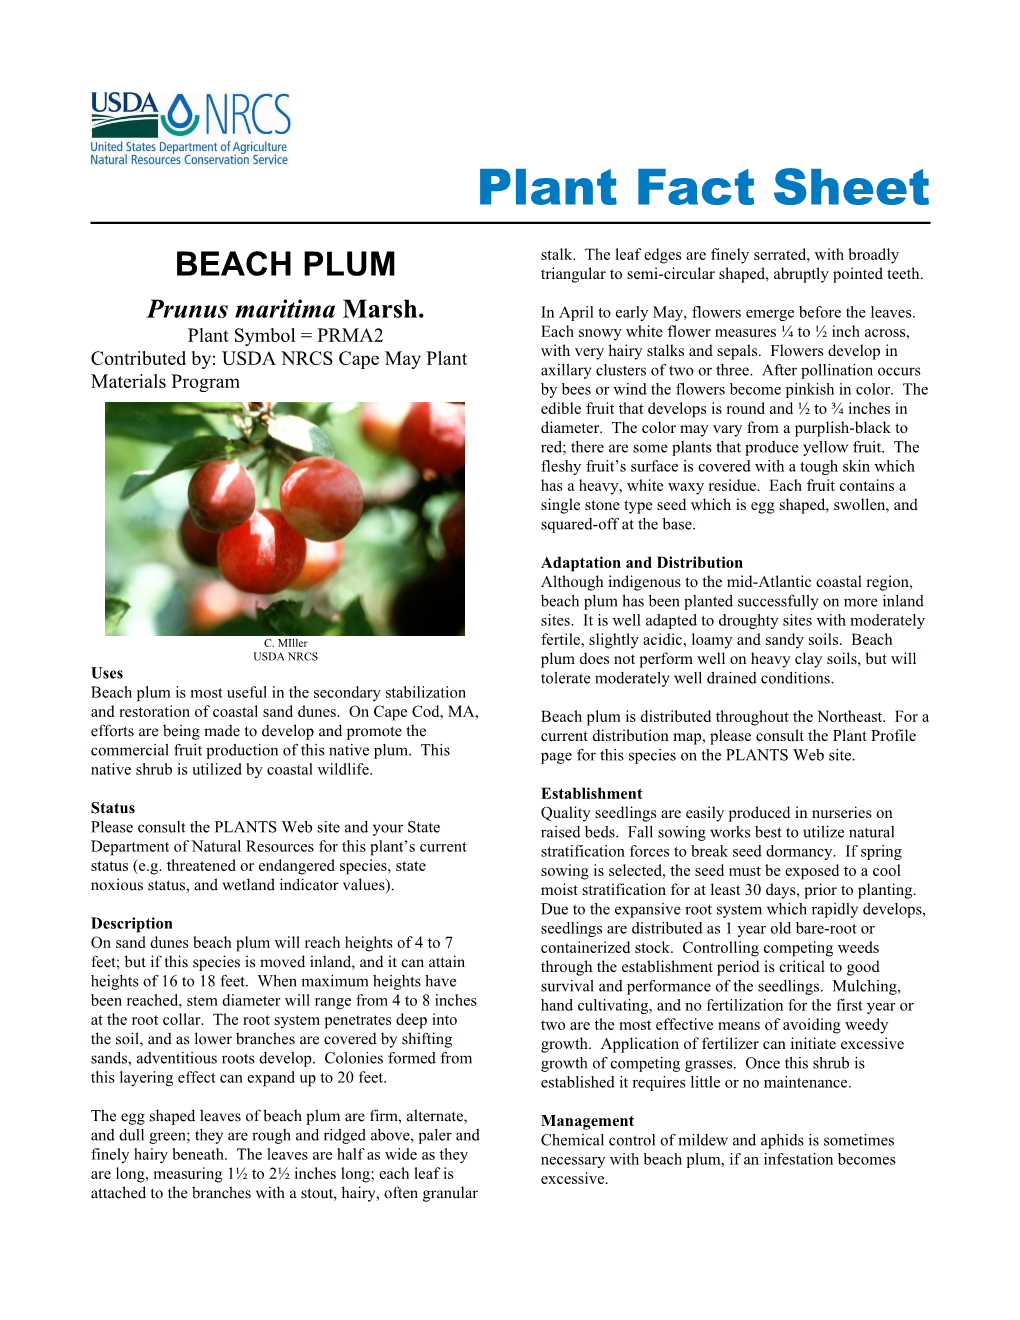 BEACH PLUM Plant Fact Sheet